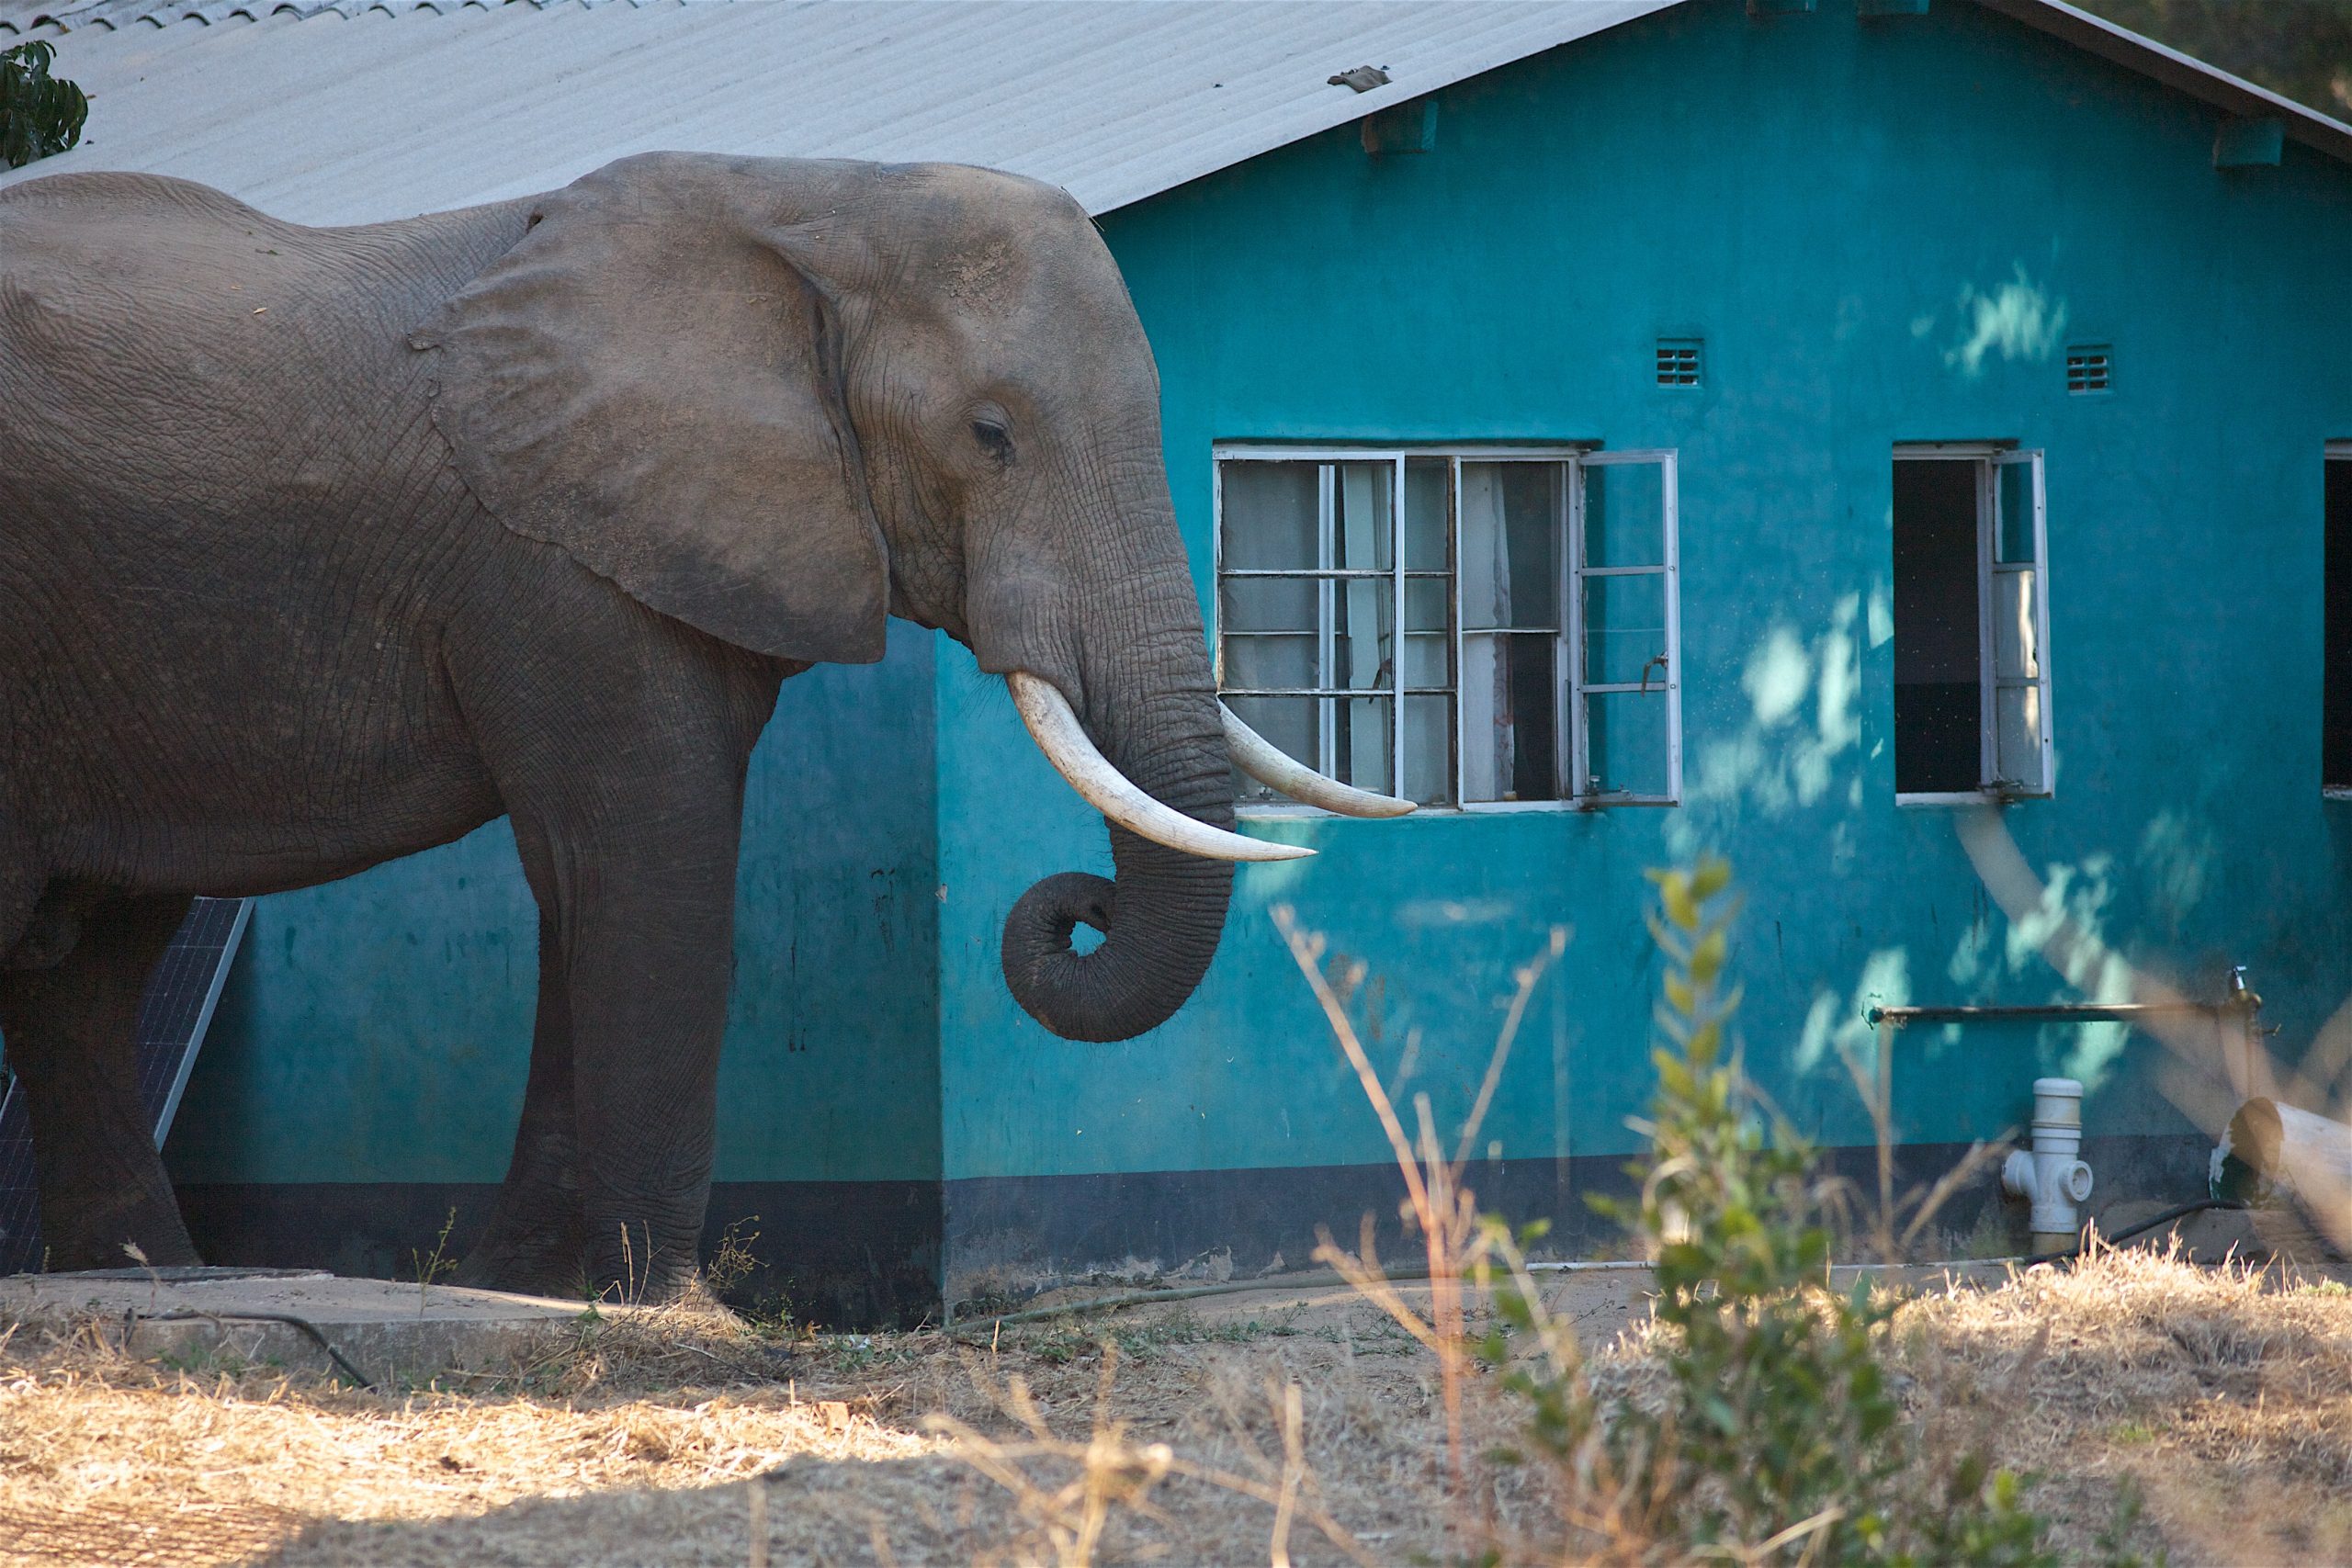 pave Såkaldte Instrument Tørkeramte elefanter hærger landsbyer | Globalnyt